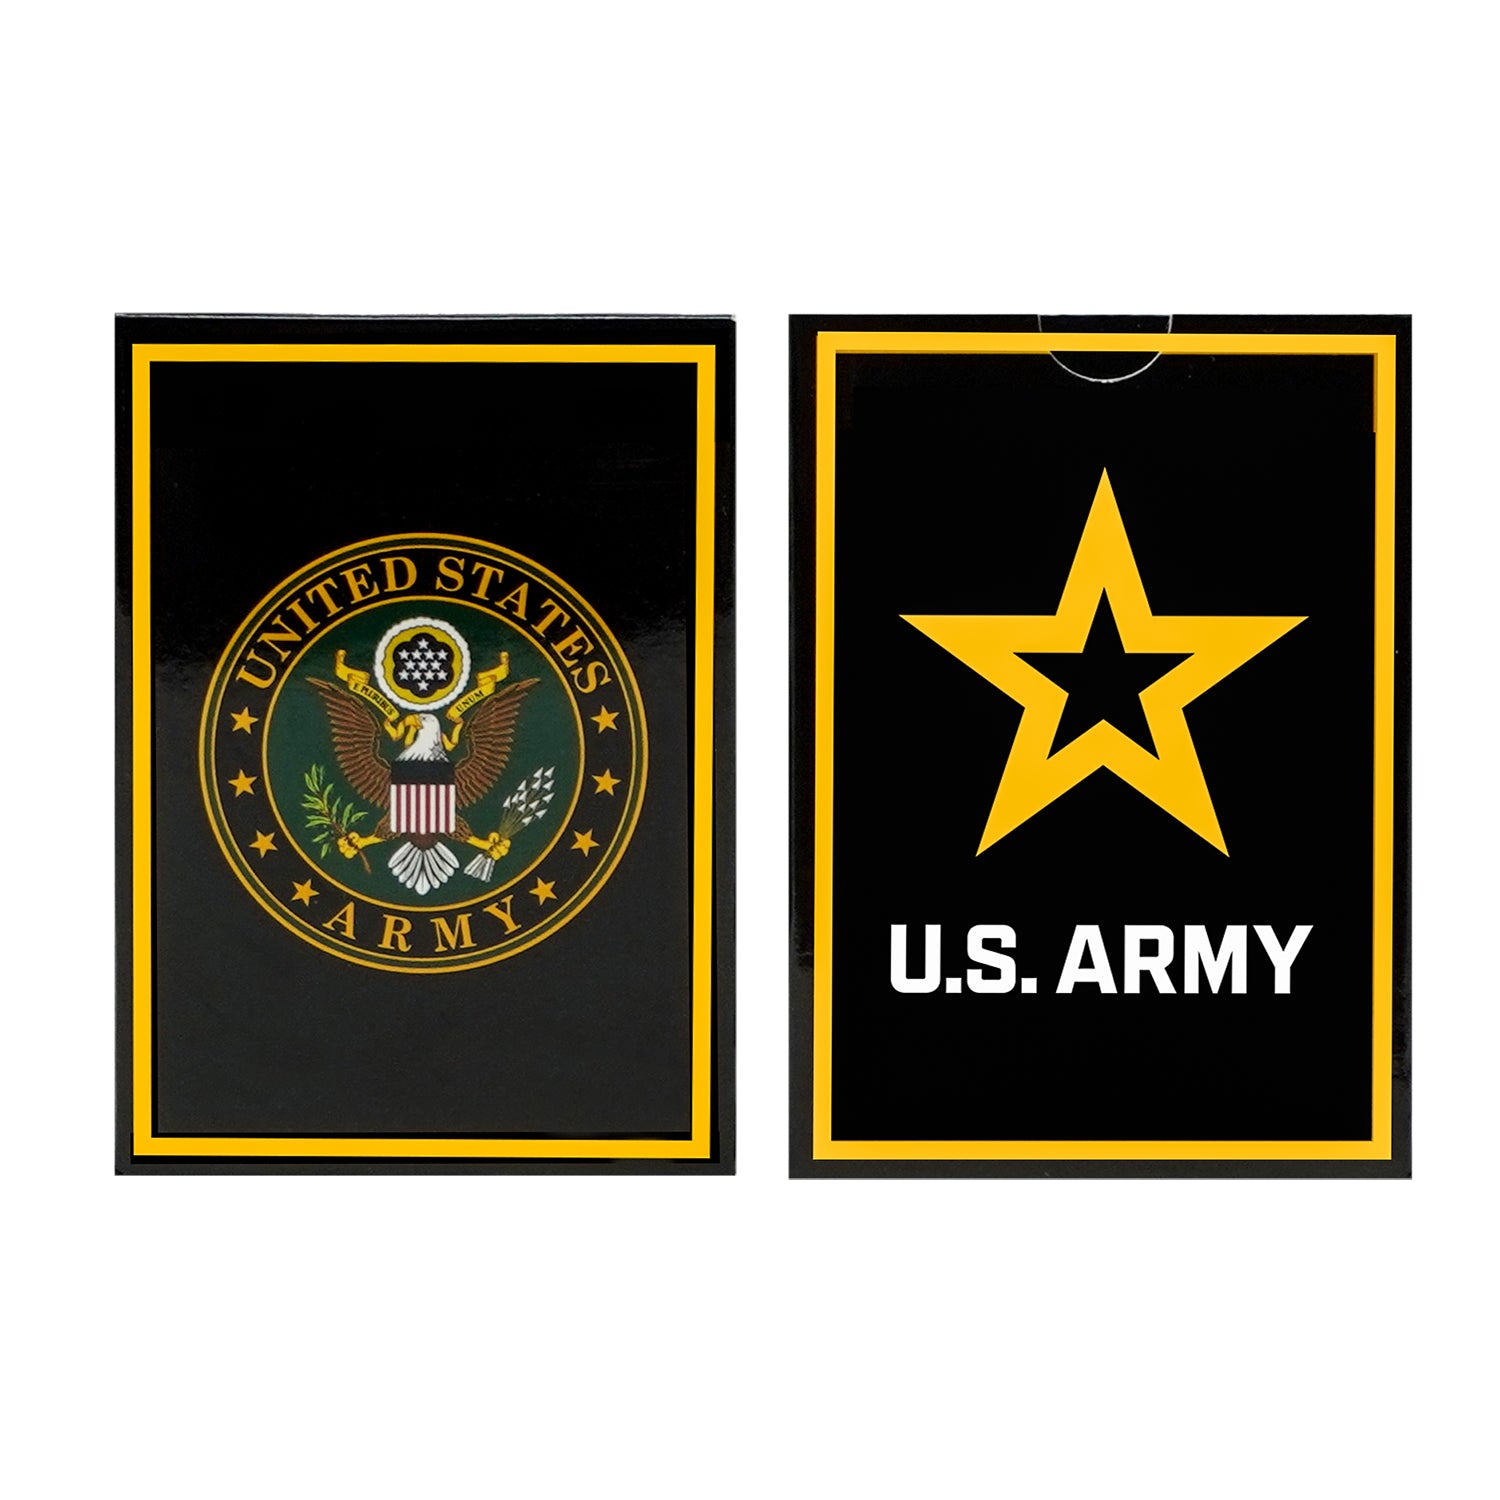 U.S. Army Logo